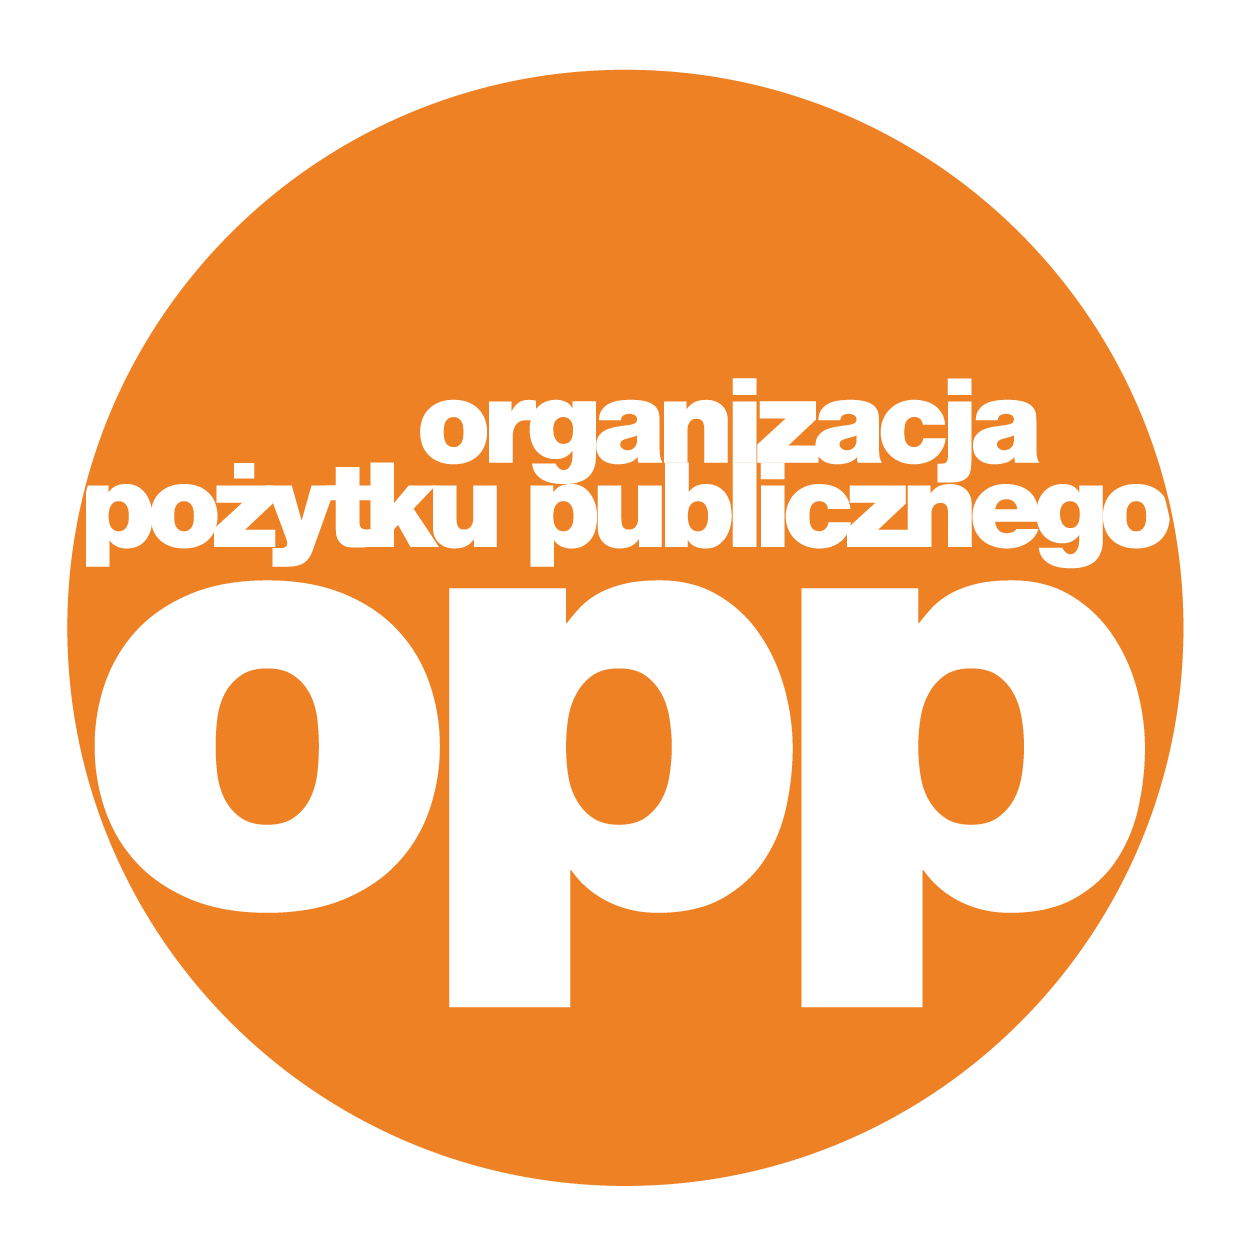 Biały napis organizacj pożytku publicznego  OPP w pomarańczowym kole